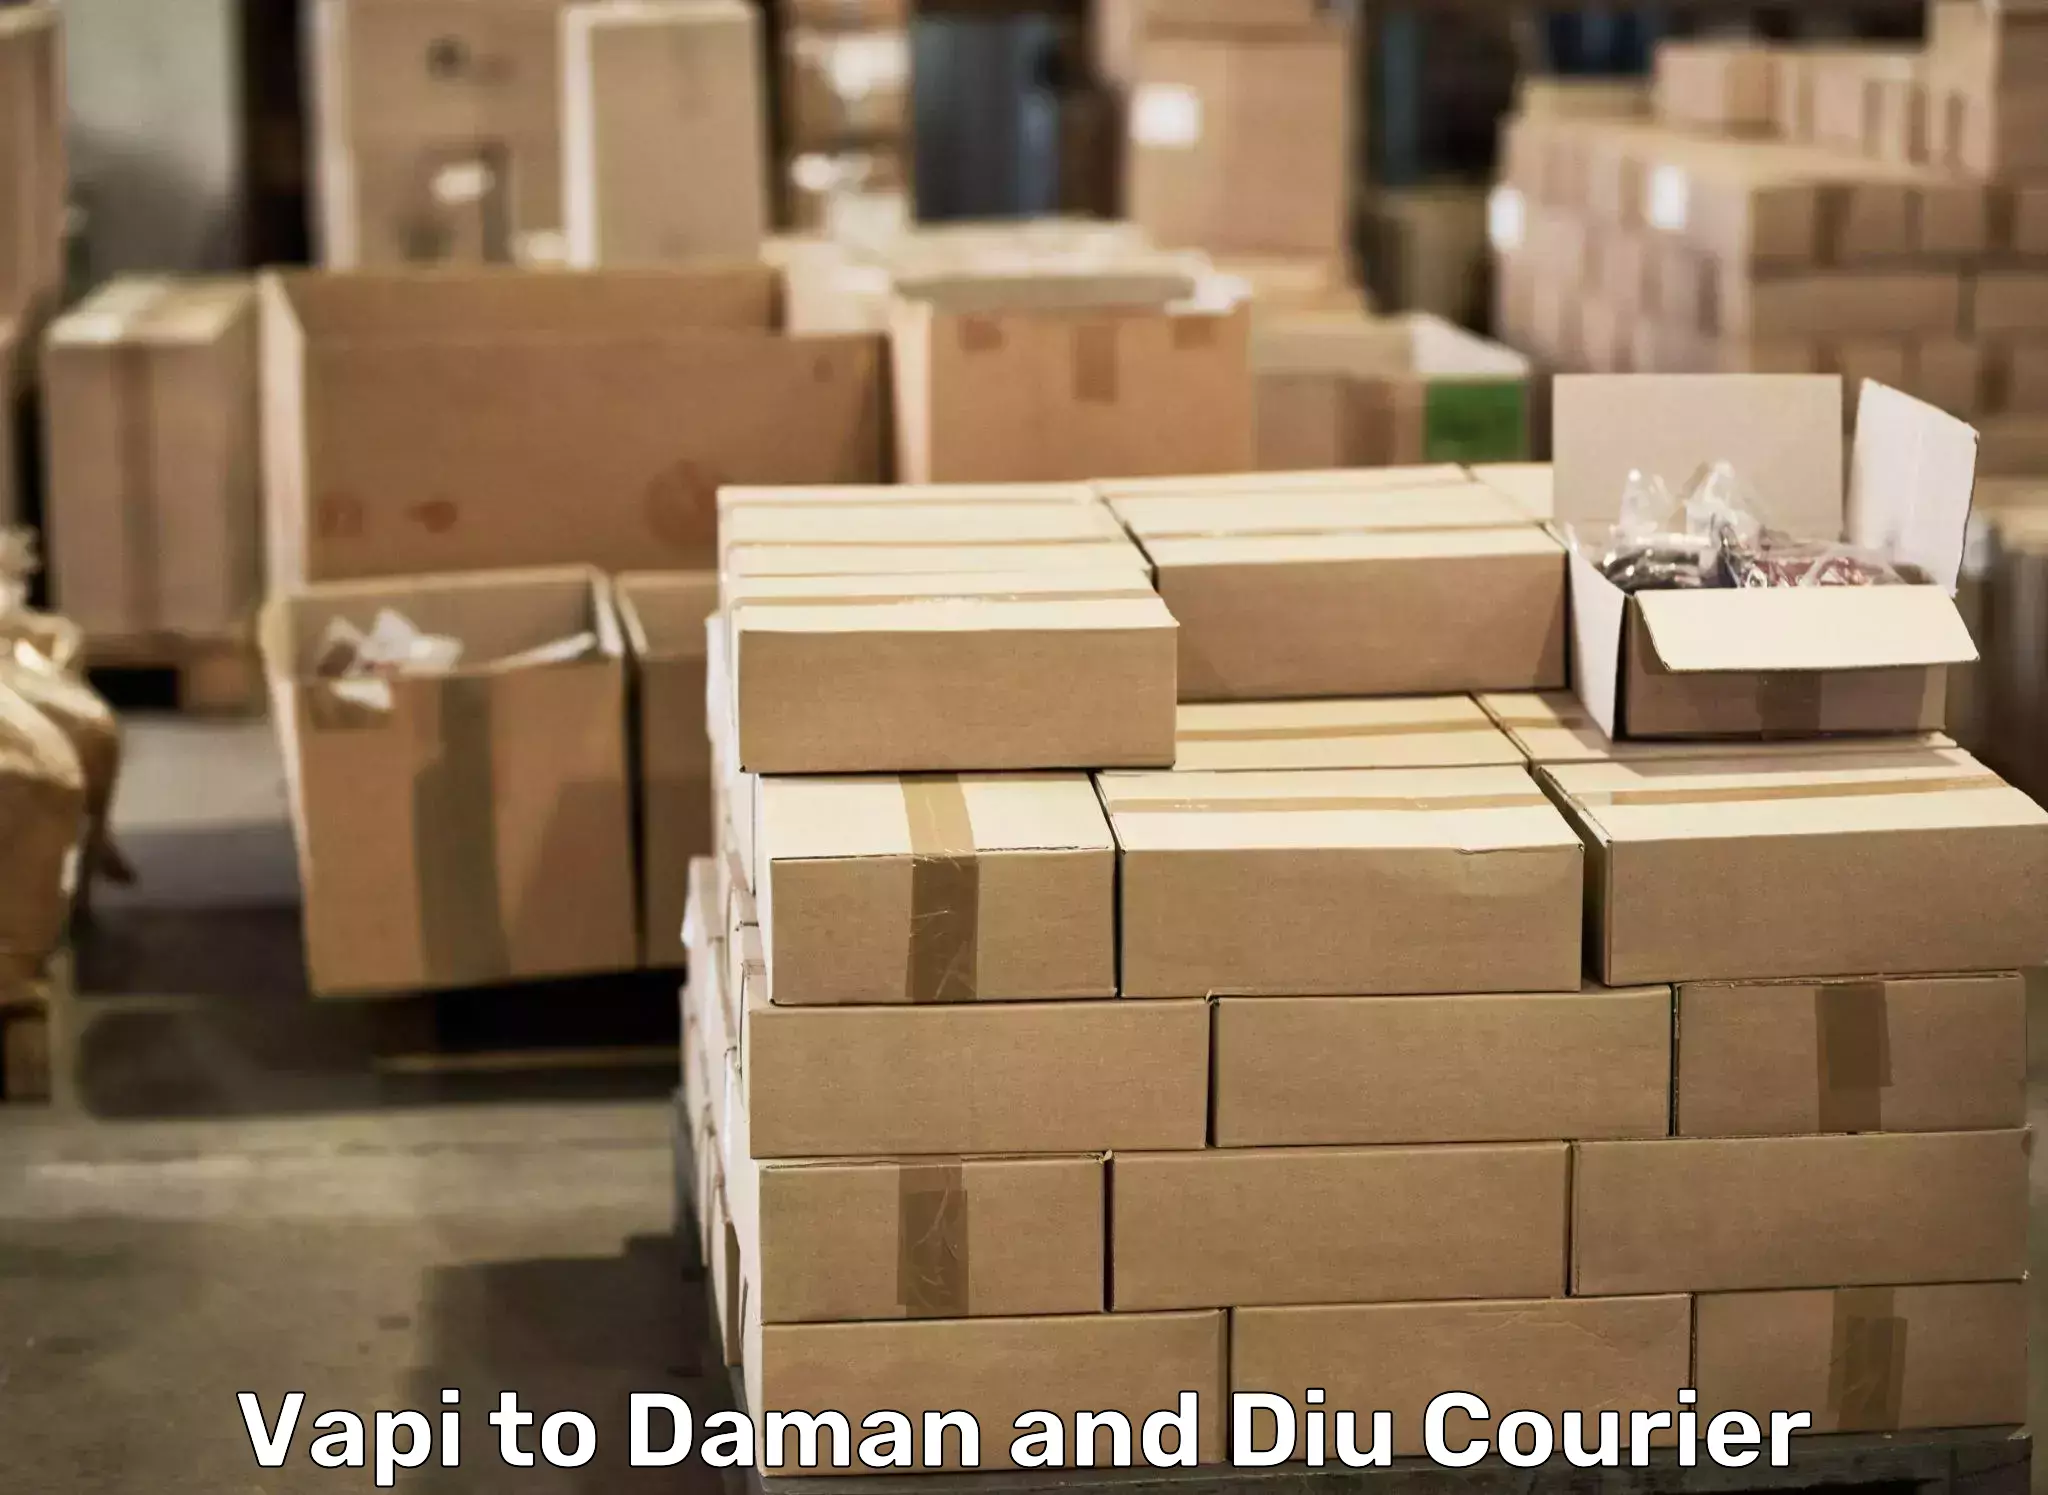 Professional furniture movers Vapi to Daman and Diu